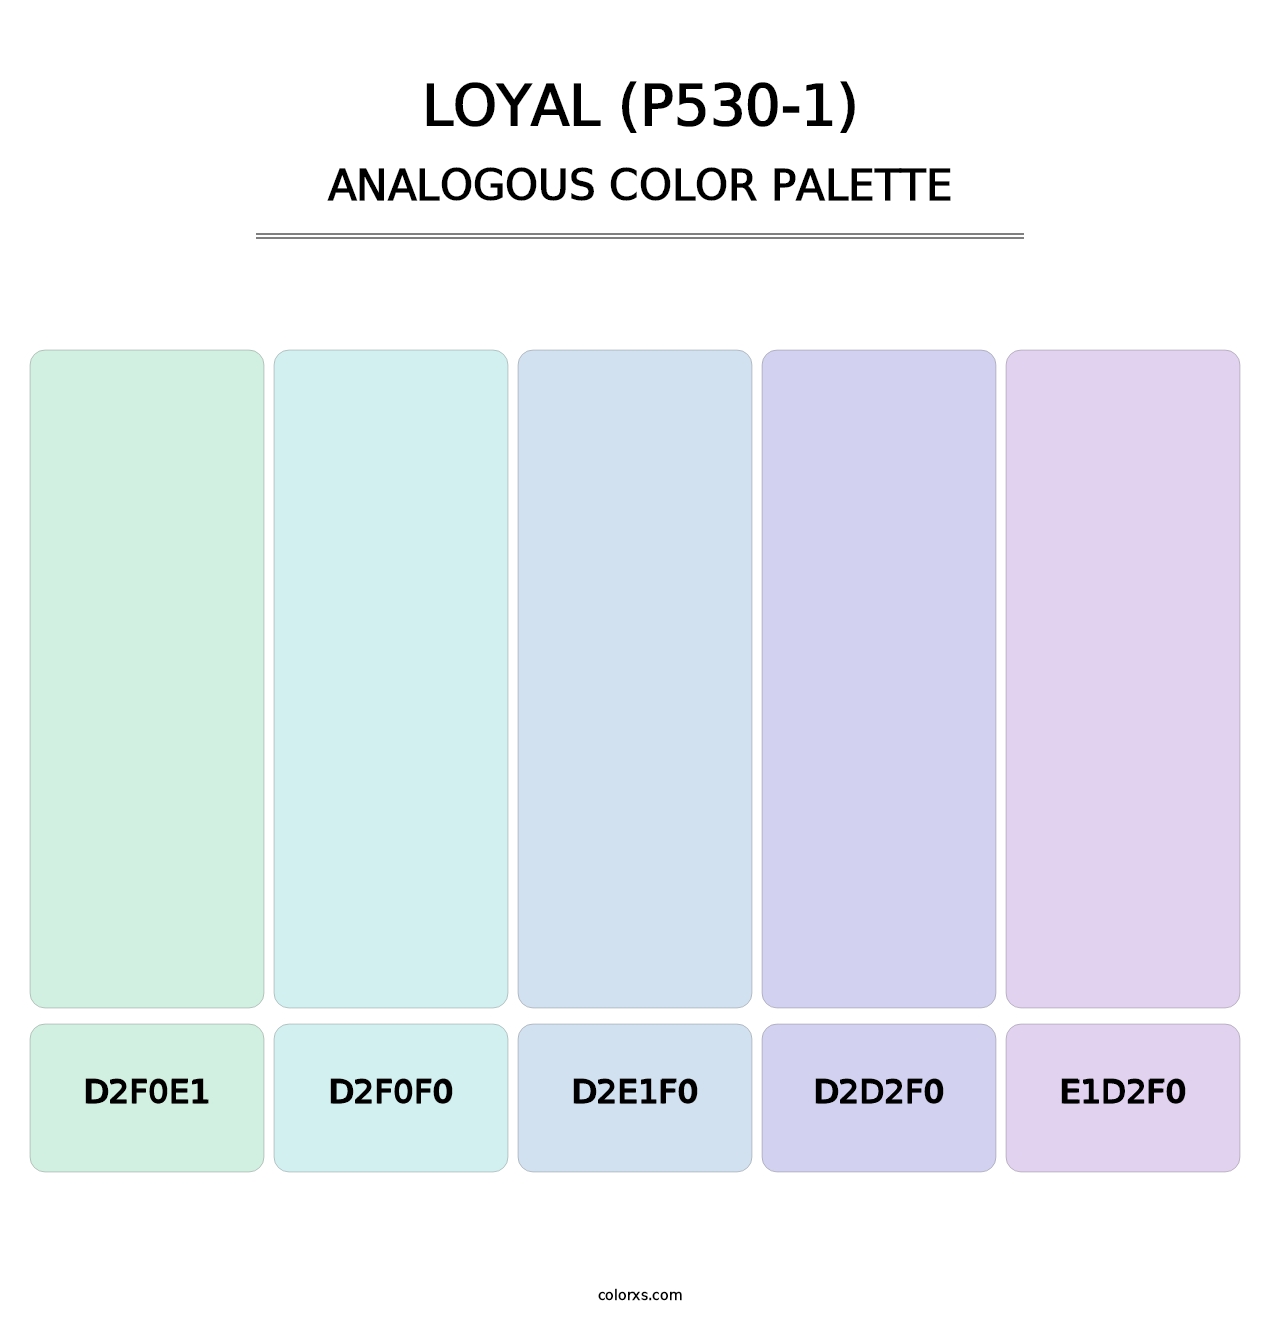 Loyal (P530-1) - Analogous Color Palette